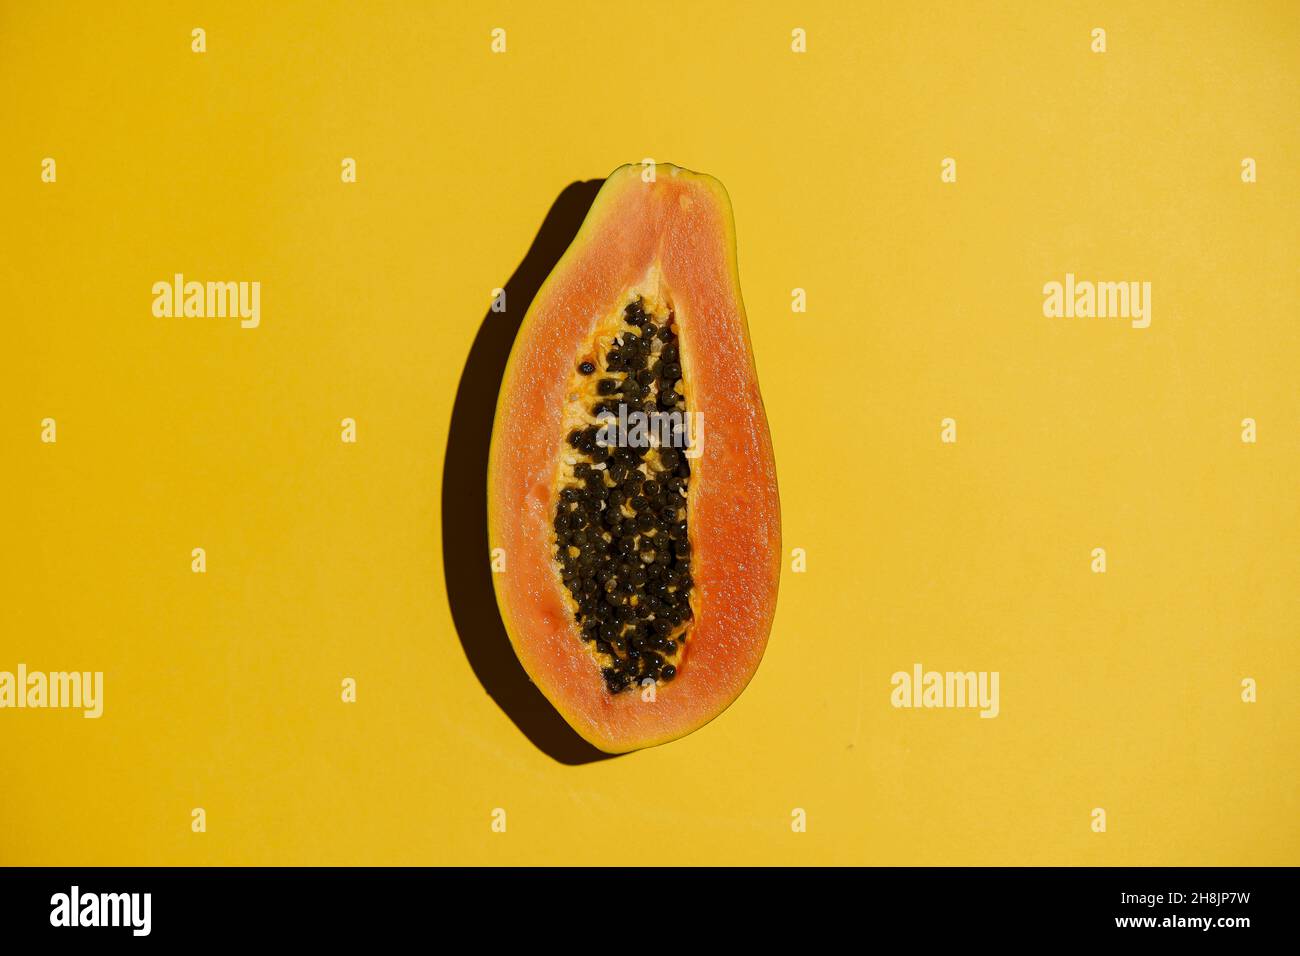 Papaya comida de verano de fondo. Jugosa y exótica papaya tropical sobre una superficie de color amarillo vacío. Verano, vitaminas, fruta, concepto de sol. Fotografías de alta calidad Foto de stock